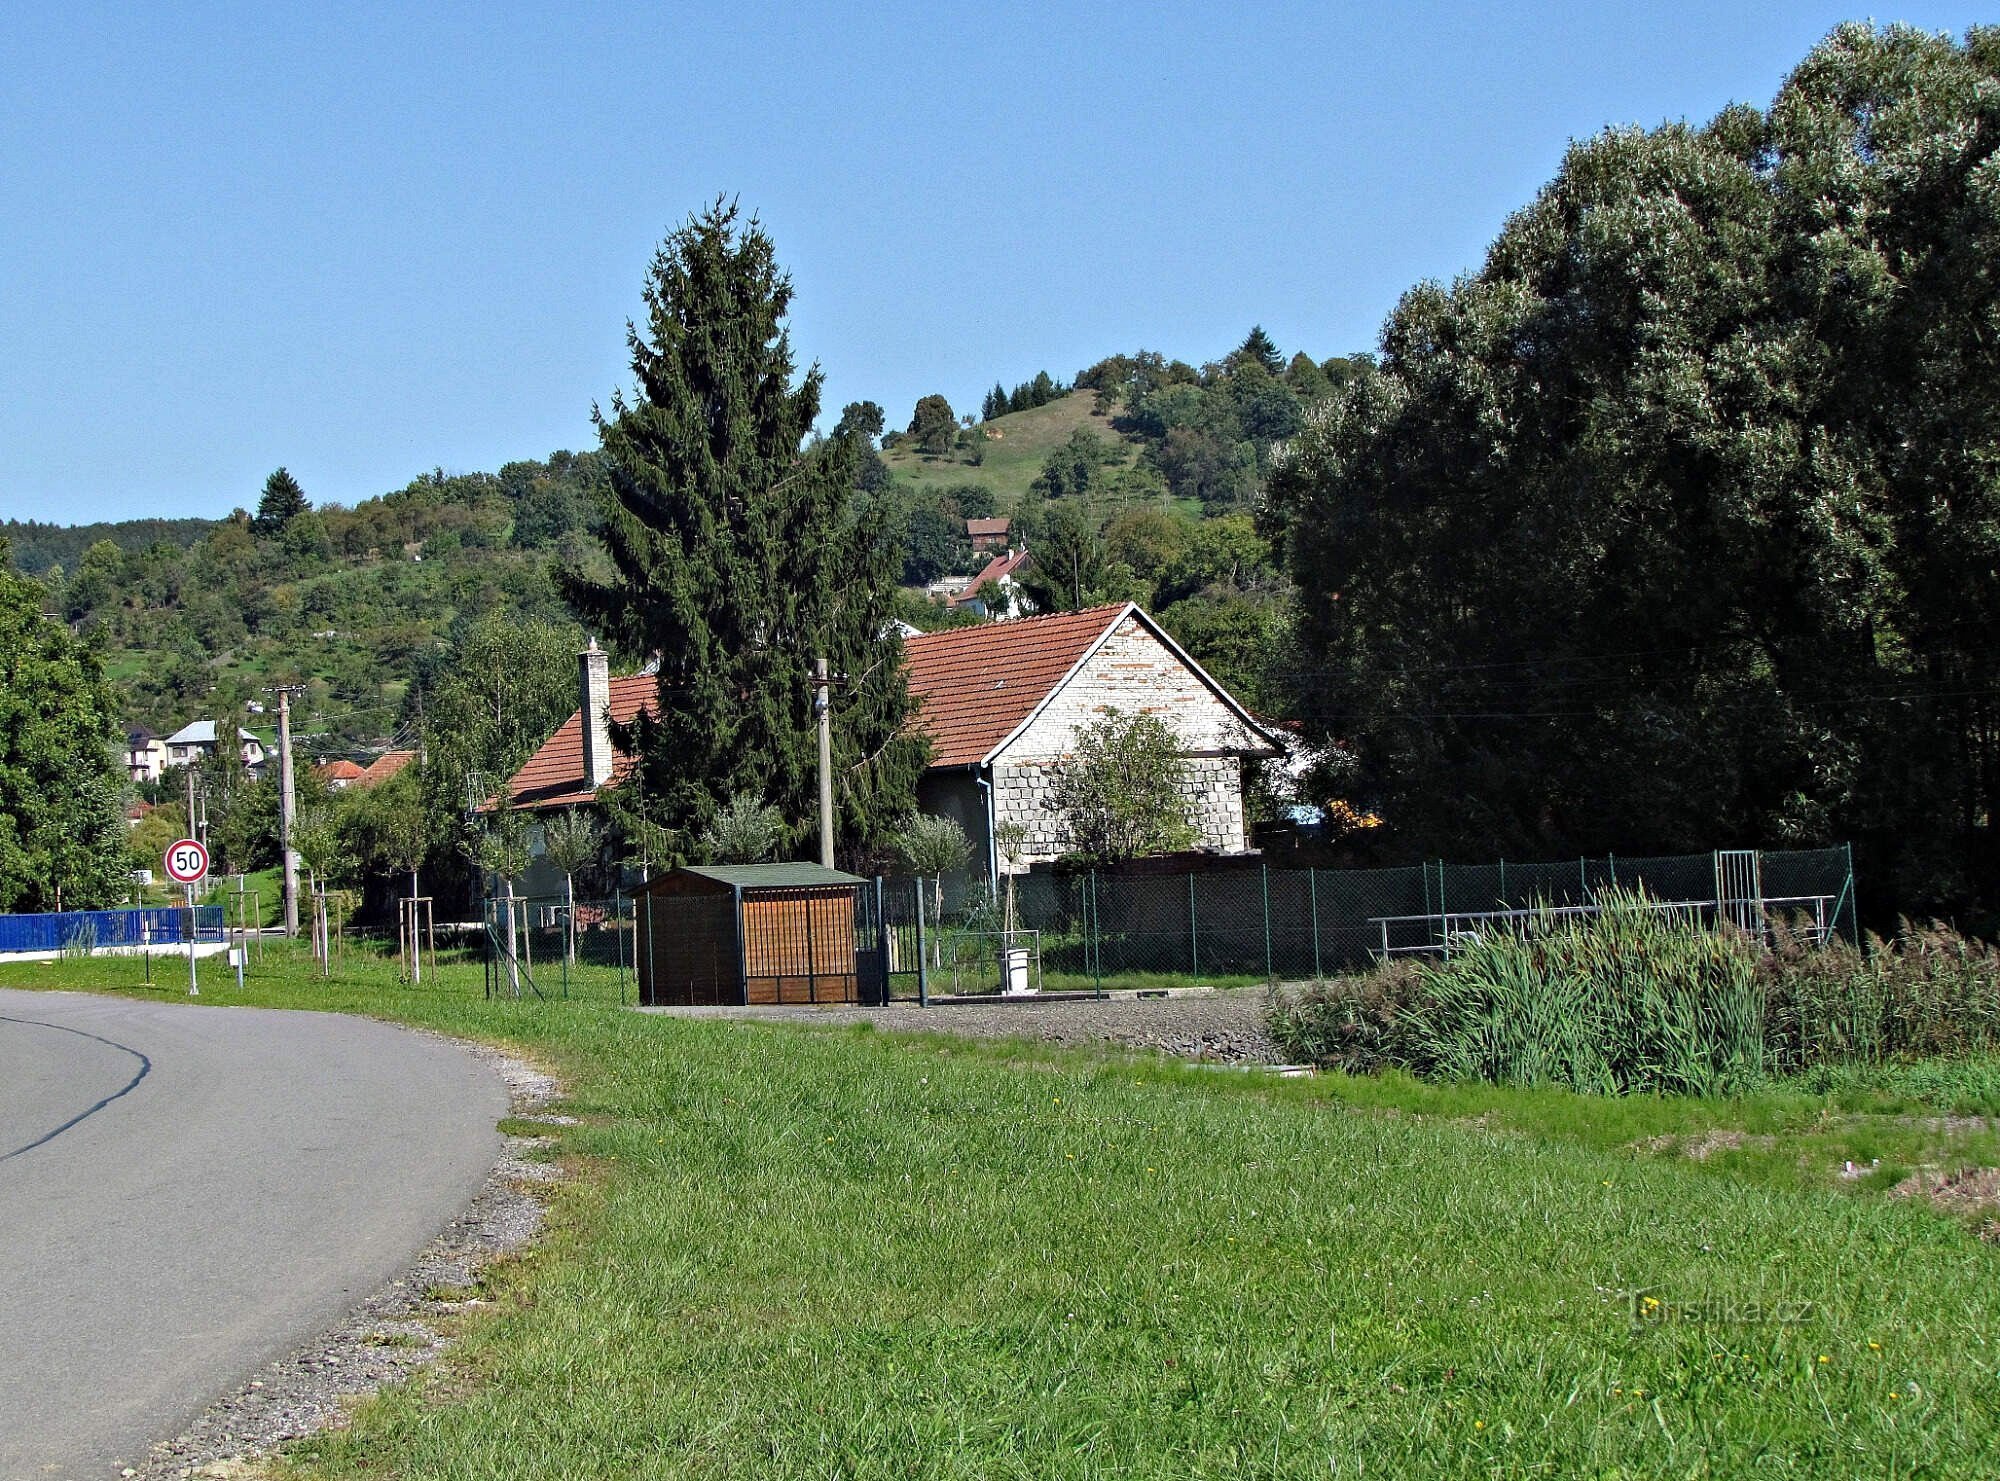 Körbe - Sehenswürdigkeiten des Dorfes